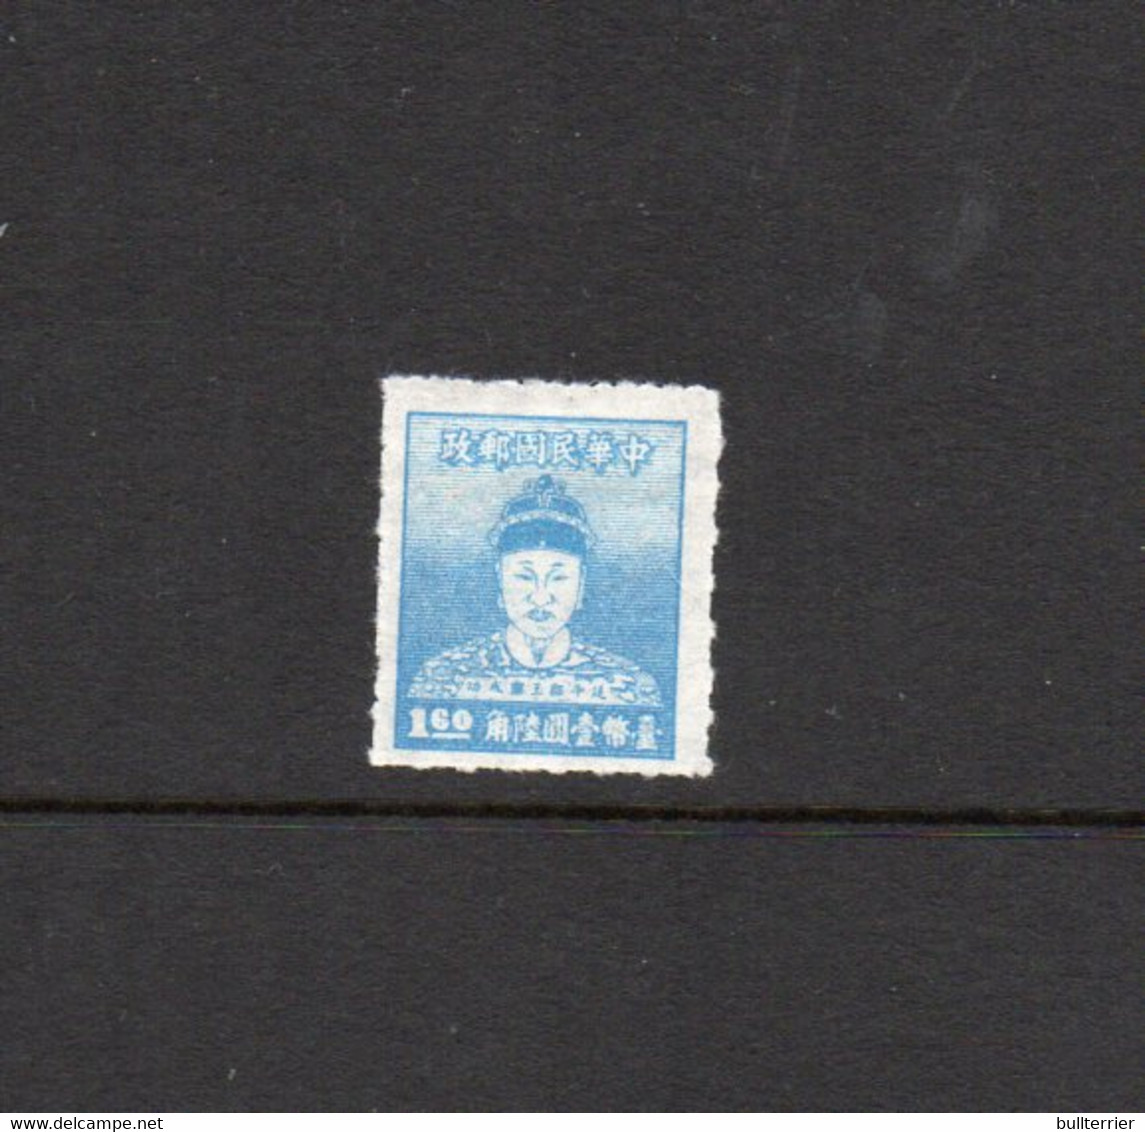 TAIWAN - 1950 - $1.60 BLUE  UNUSED AS ISSUED SG CAT £140 - Ongebruikt